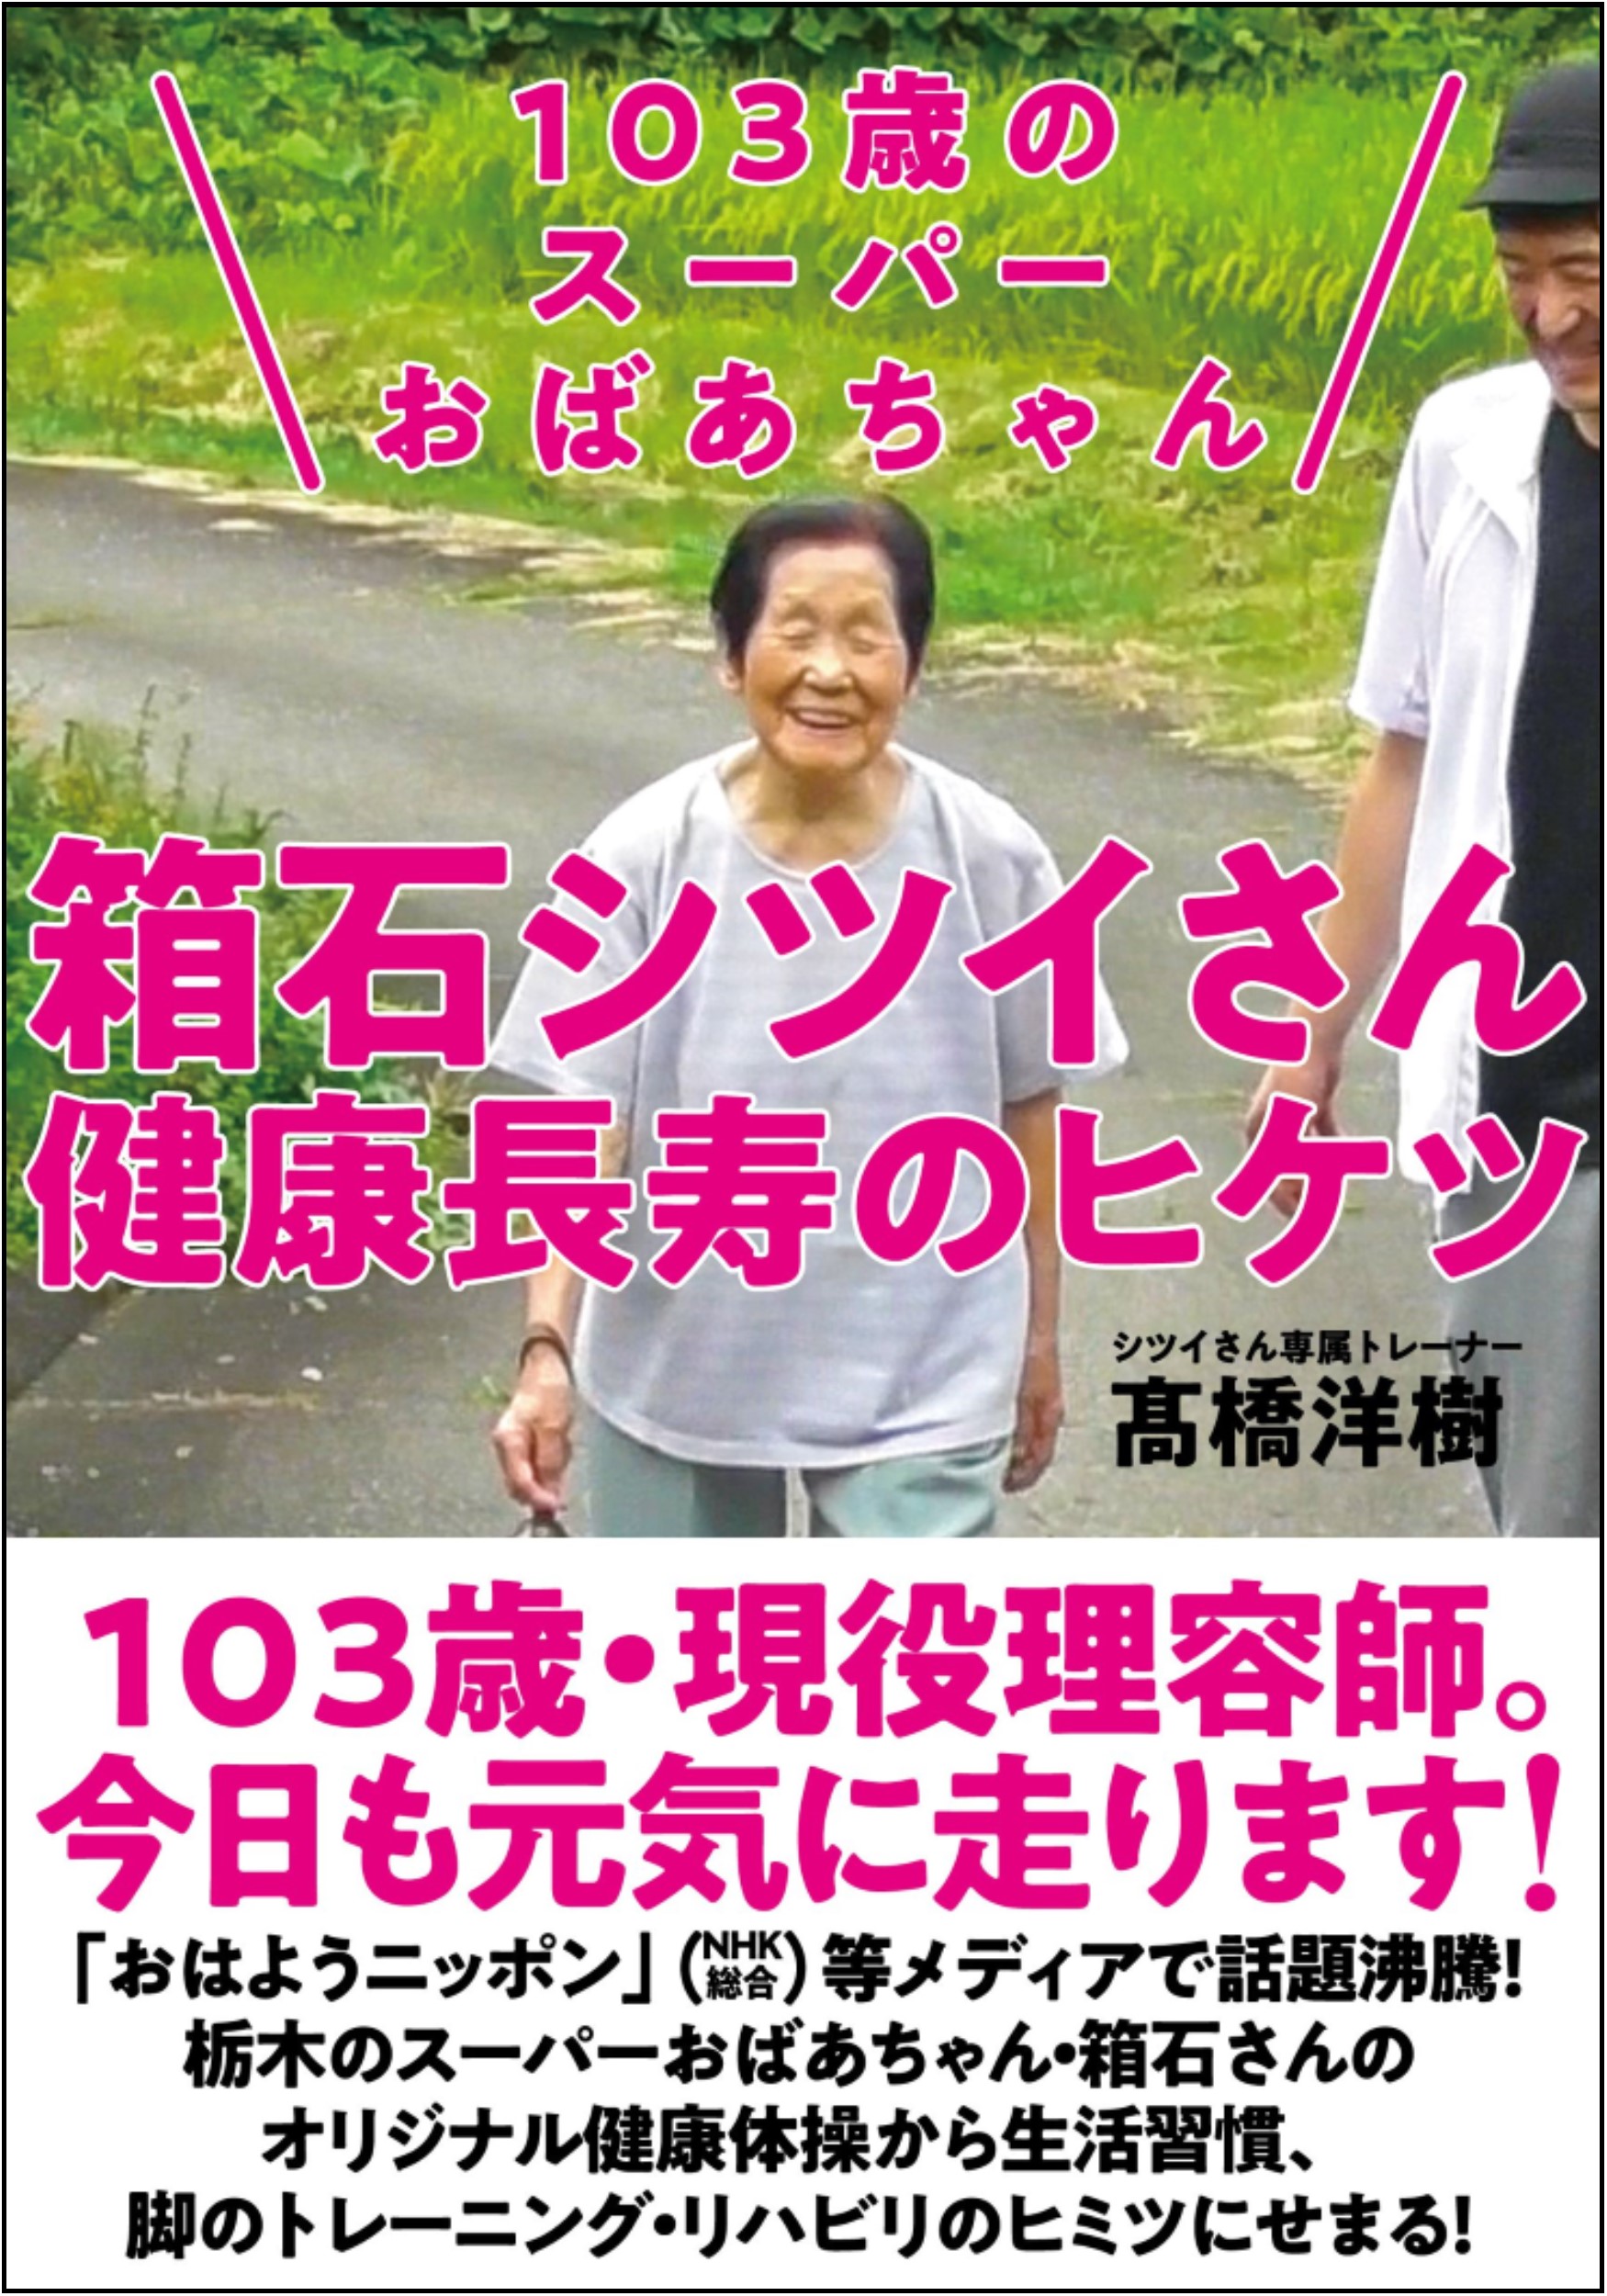 103歳の現役理容師は 日本を元気にするスーパーおばあちゃん 株式会社自由国民社のプレスリリース